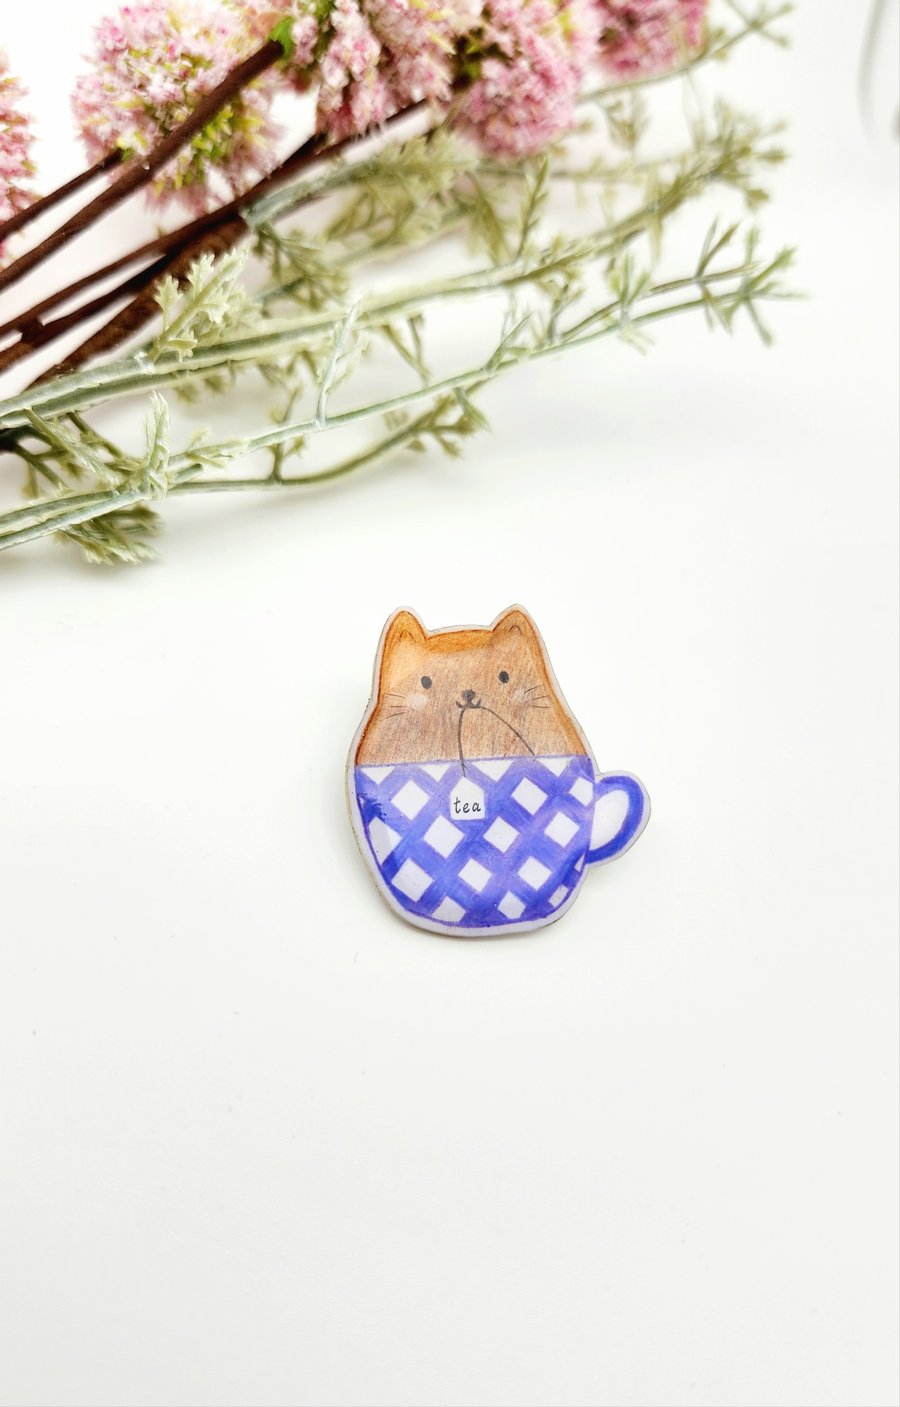 Brooch, Pin, Handmade Lovely Cat Pin, Shrink Plastic Pin